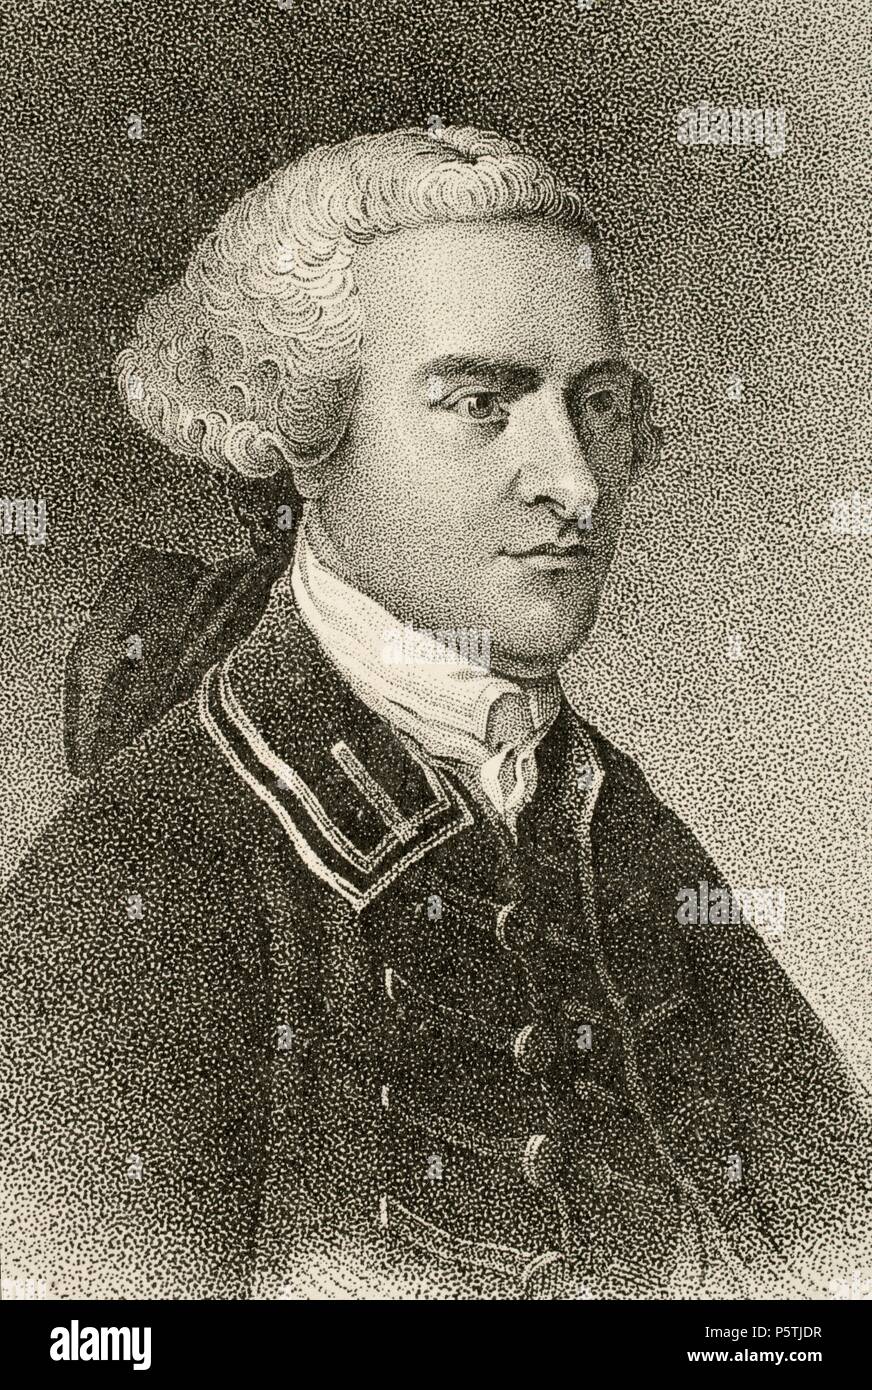 John Hancock (1737-1793). Est marchand, homme d'État, et d'éminents patriote de la Révolution américaine. Il a été président du Second Congrès continental et a été le premier et le troisième Gouverneur du Commonwealth du Massachusetts. Gravure de Copley. La Révolution américaine. Banque D'Images